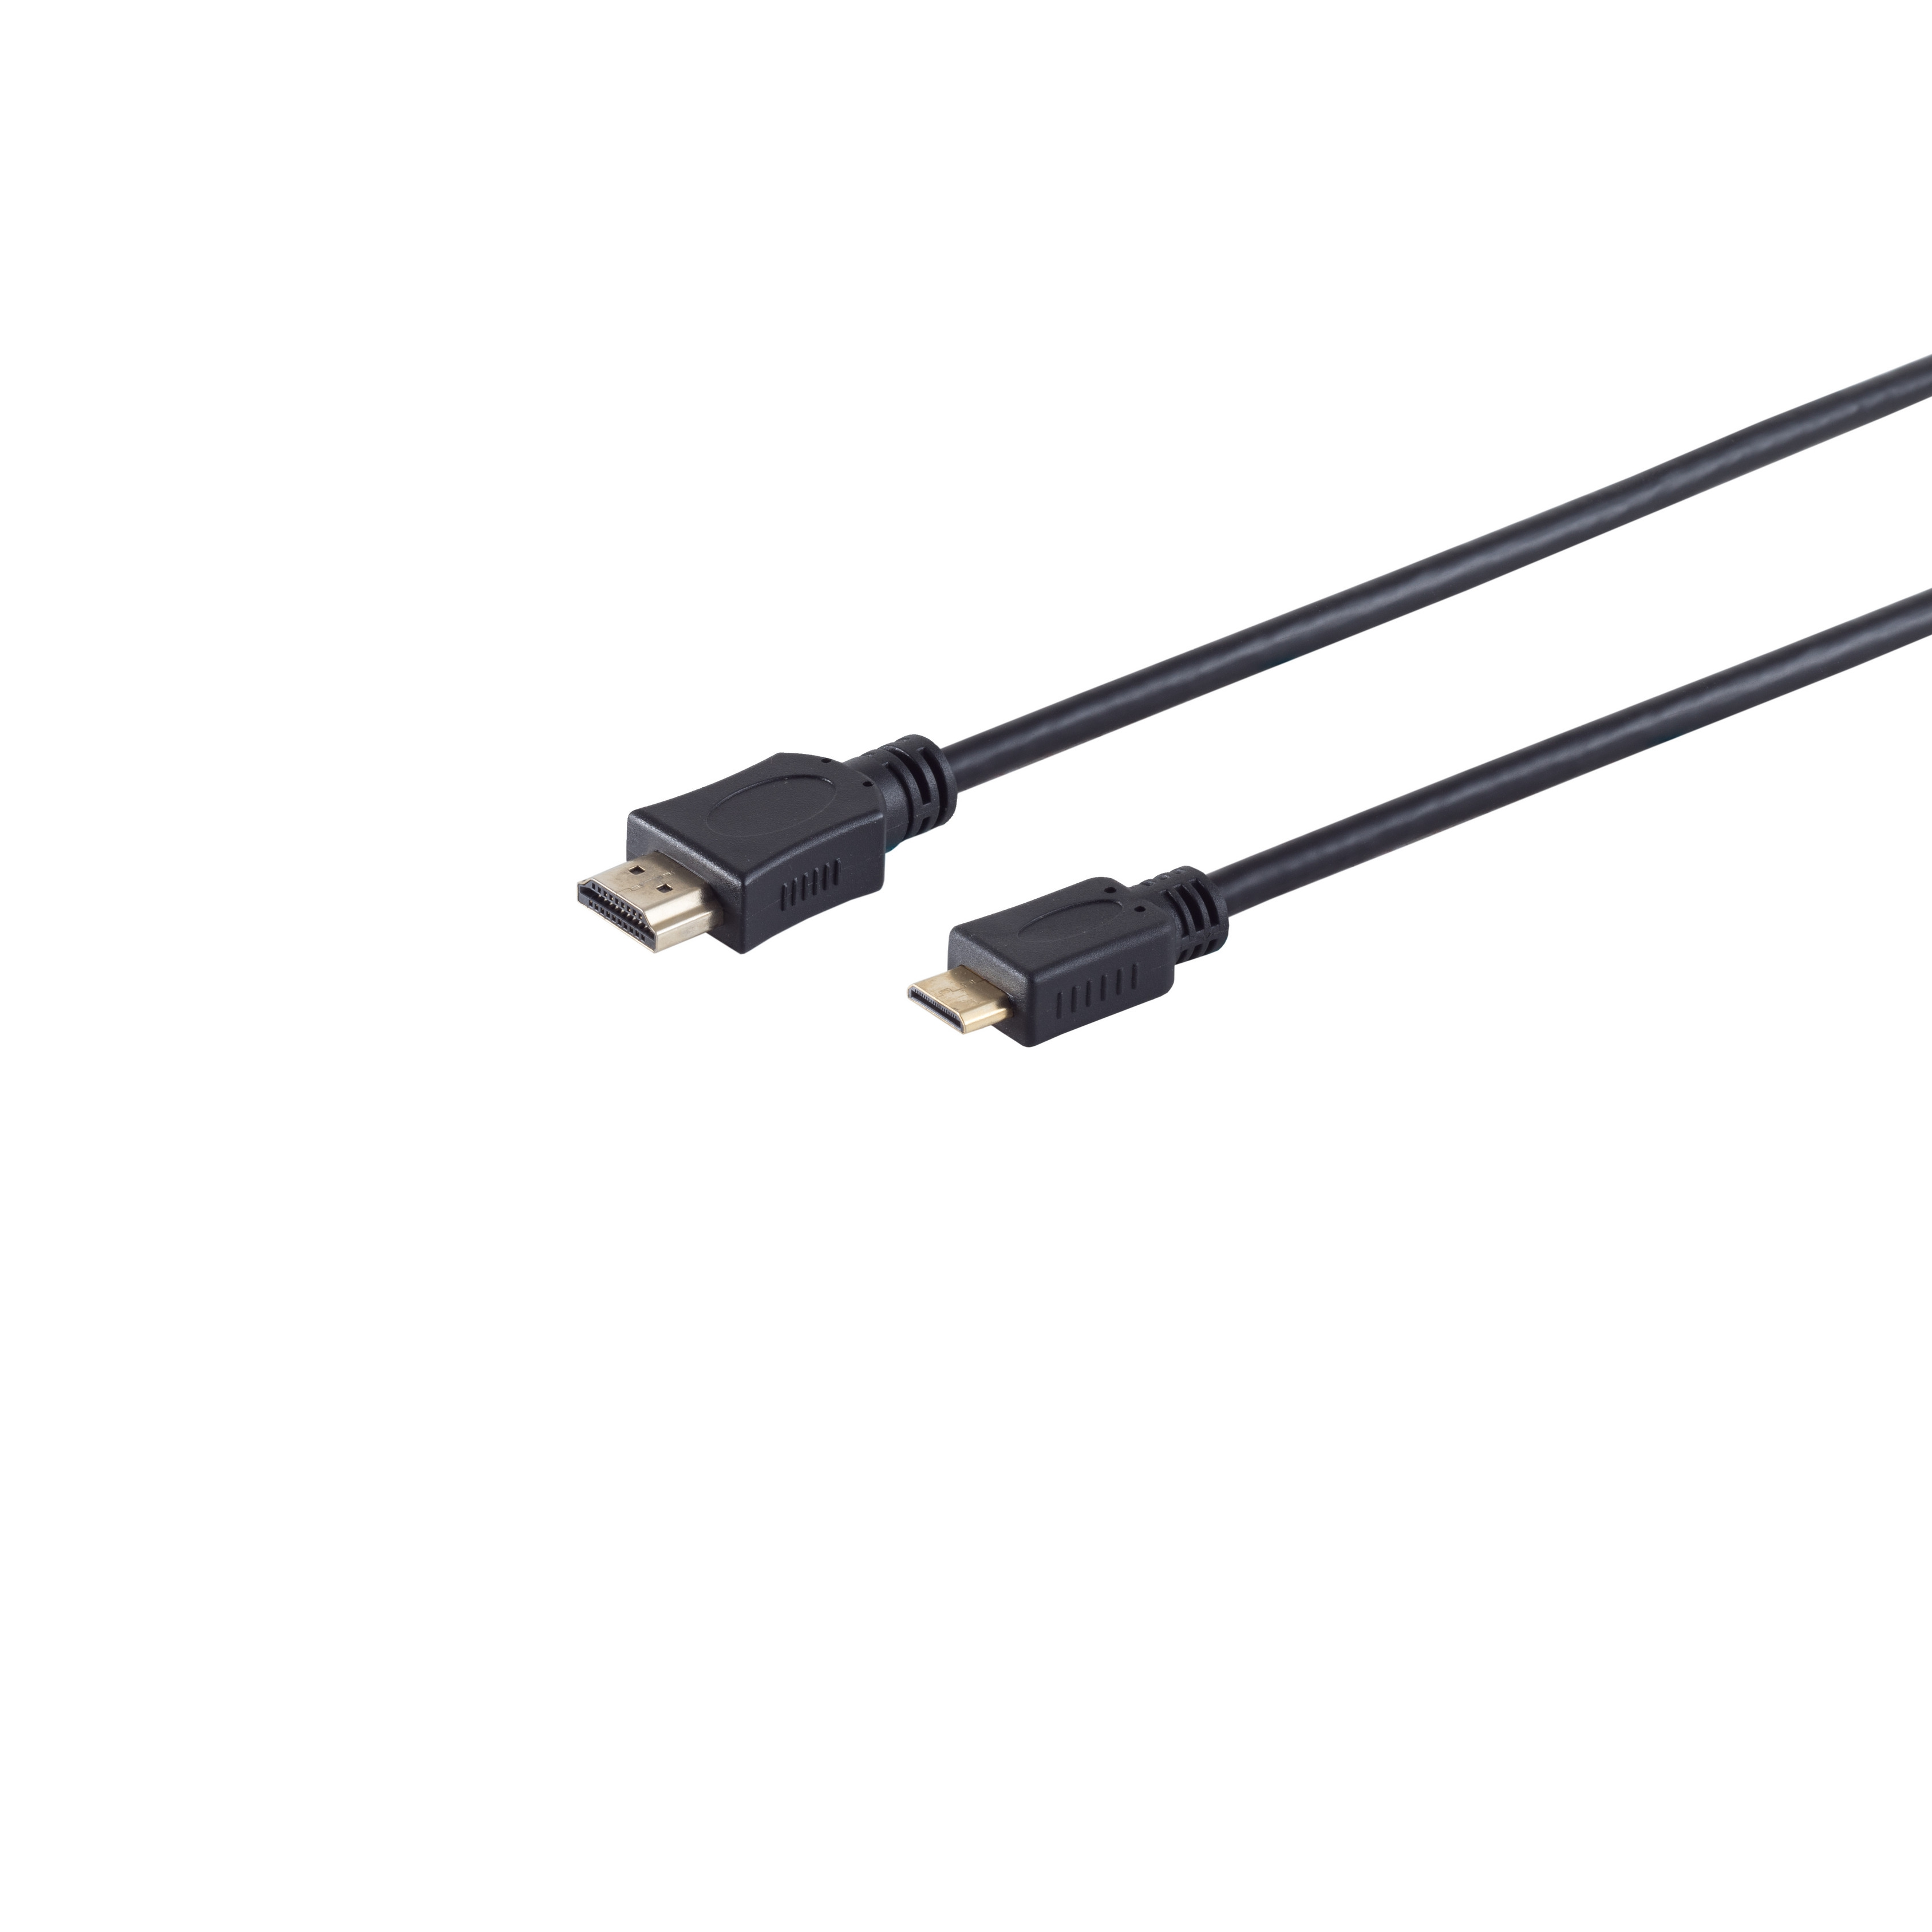 S/CONN MAXIMUM A-Stecker HDMI 5m C-Stecker verg. HDMI Kabel HEAC HDMI / CONNECTIVITY